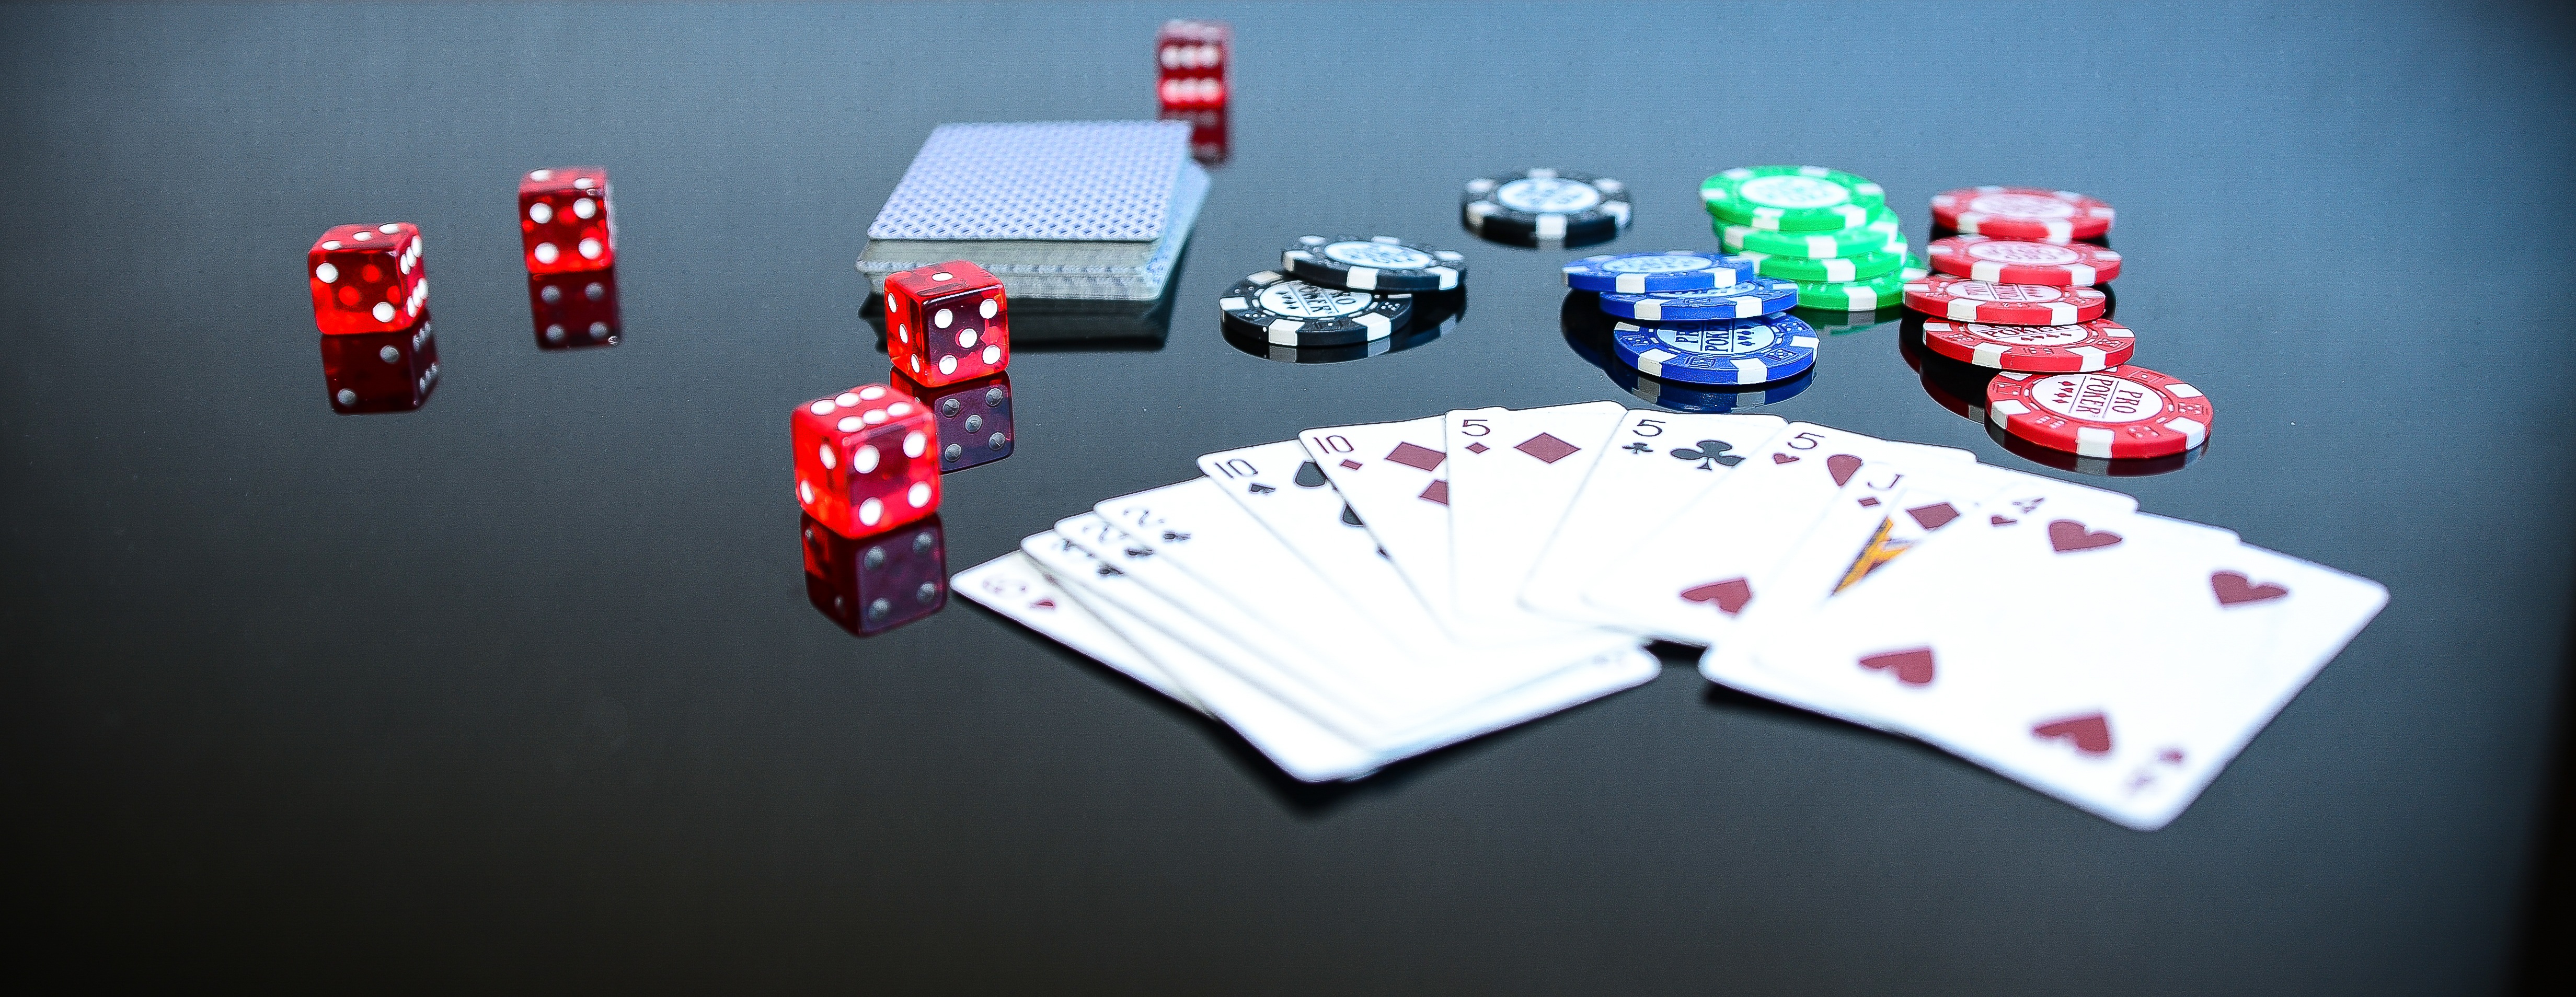 La réalité augmentée pourrait permettre aux joueurs de poker de tricher grâce à l’intelligence artificielle. © Pxhere.com